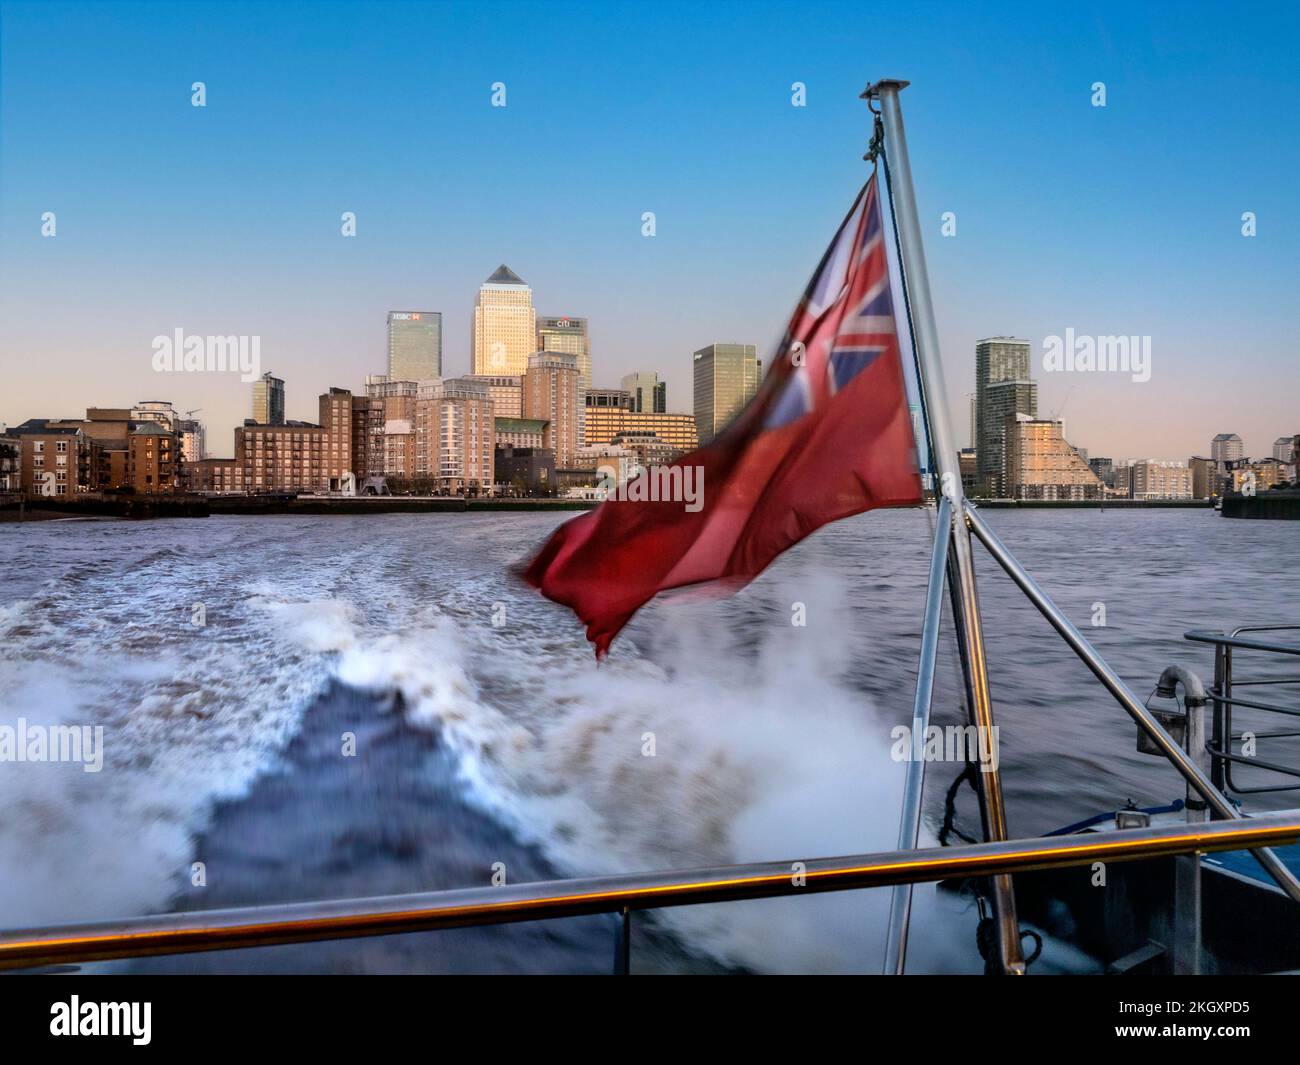 CANARY WHARF Thames Clipper River boat RB1 sfocato a velocità, volo tradizionale bandiera rossa con partenza da Canary Wharf al tramonto sul Tamigi Londra UK Foto Stock